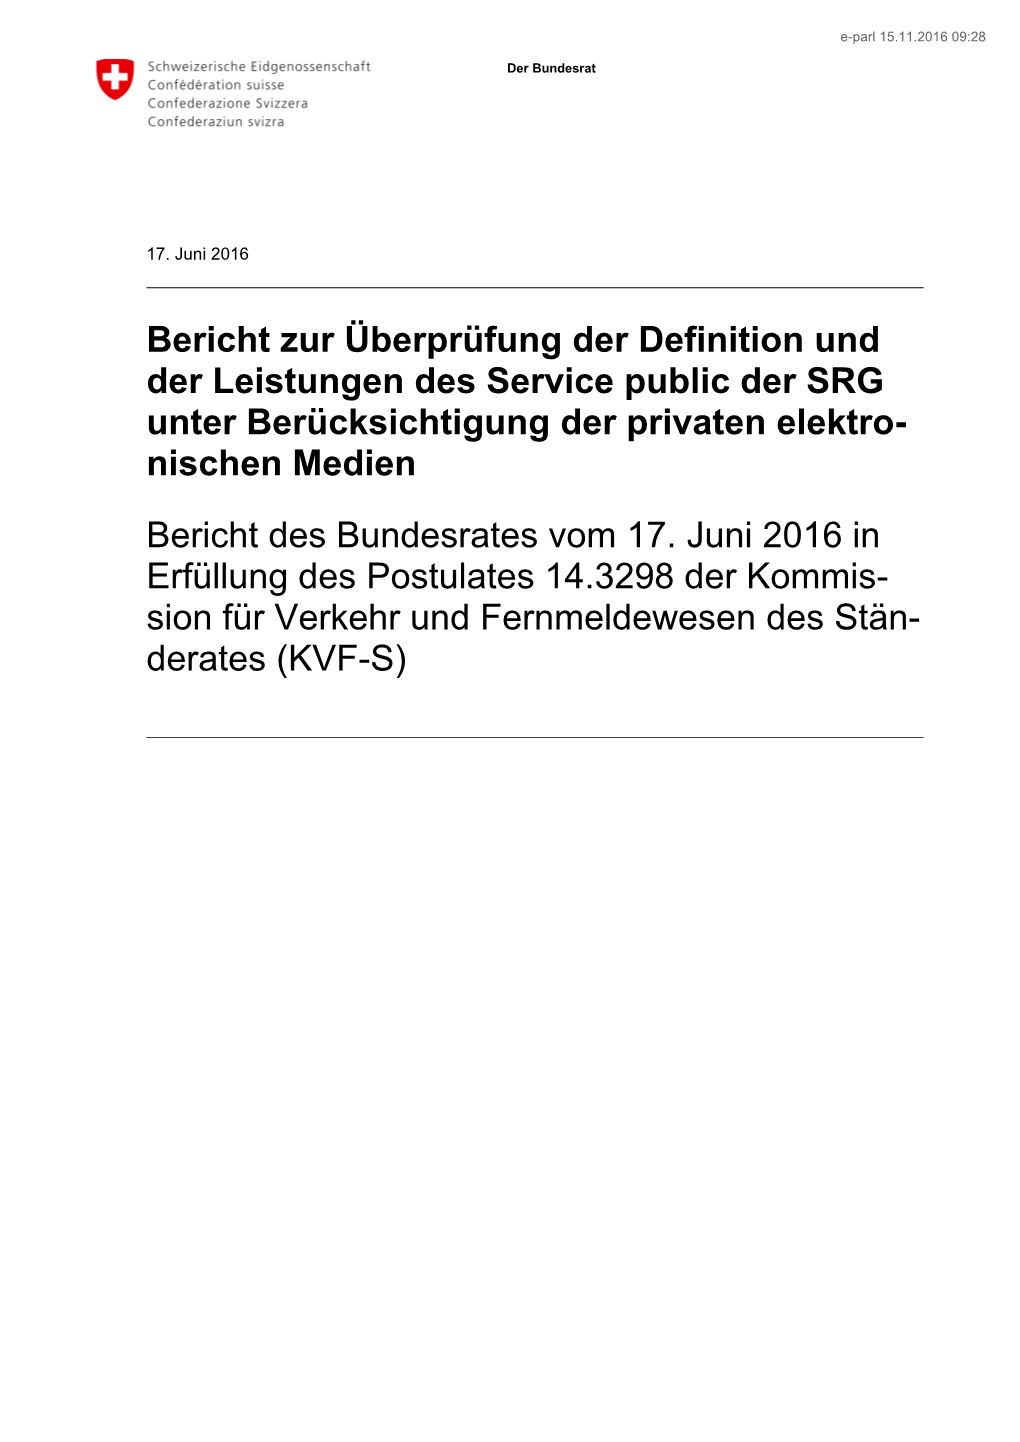 Bericht Zur Überprüfung Der Definition Und Der Leistungen Des Service Public Der